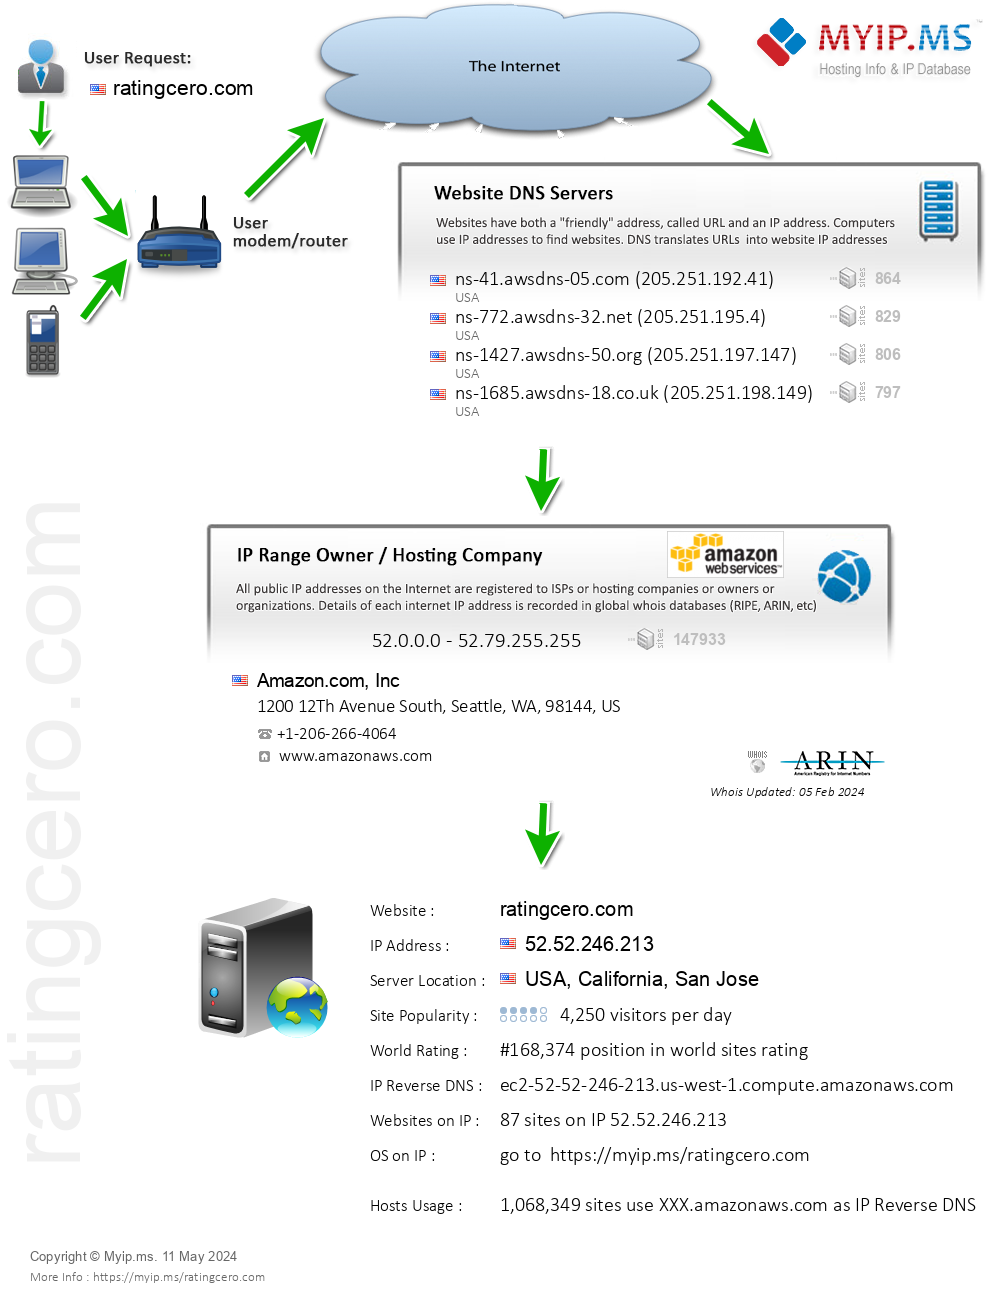 Ratingcero.com - Website Hosting Visual IP Diagram